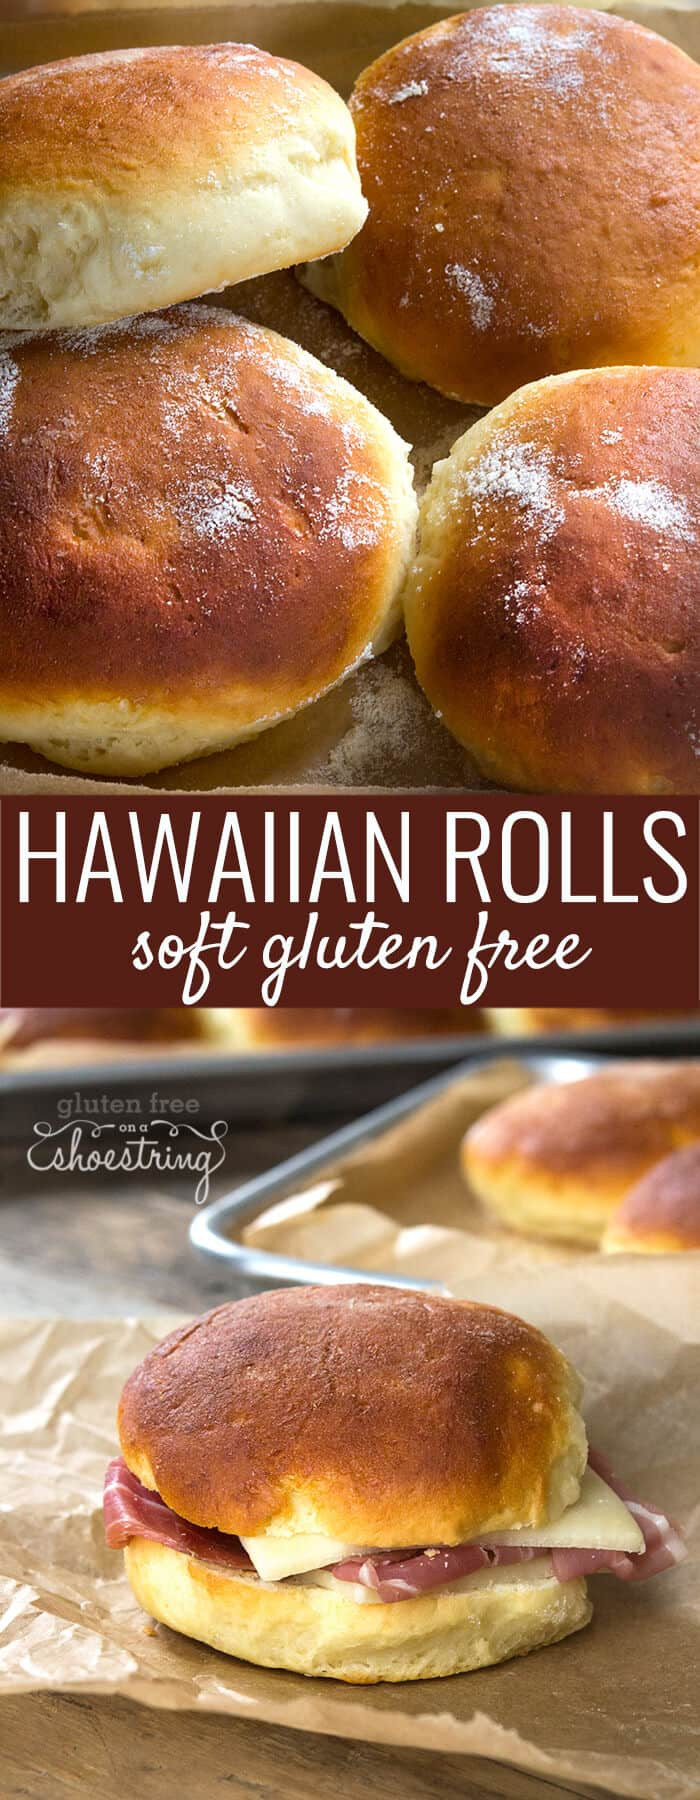 Gluten Free Bread Rolls Recipe
 Gluten Free Hawaiian Rolls Recipe from Bakes Bread with